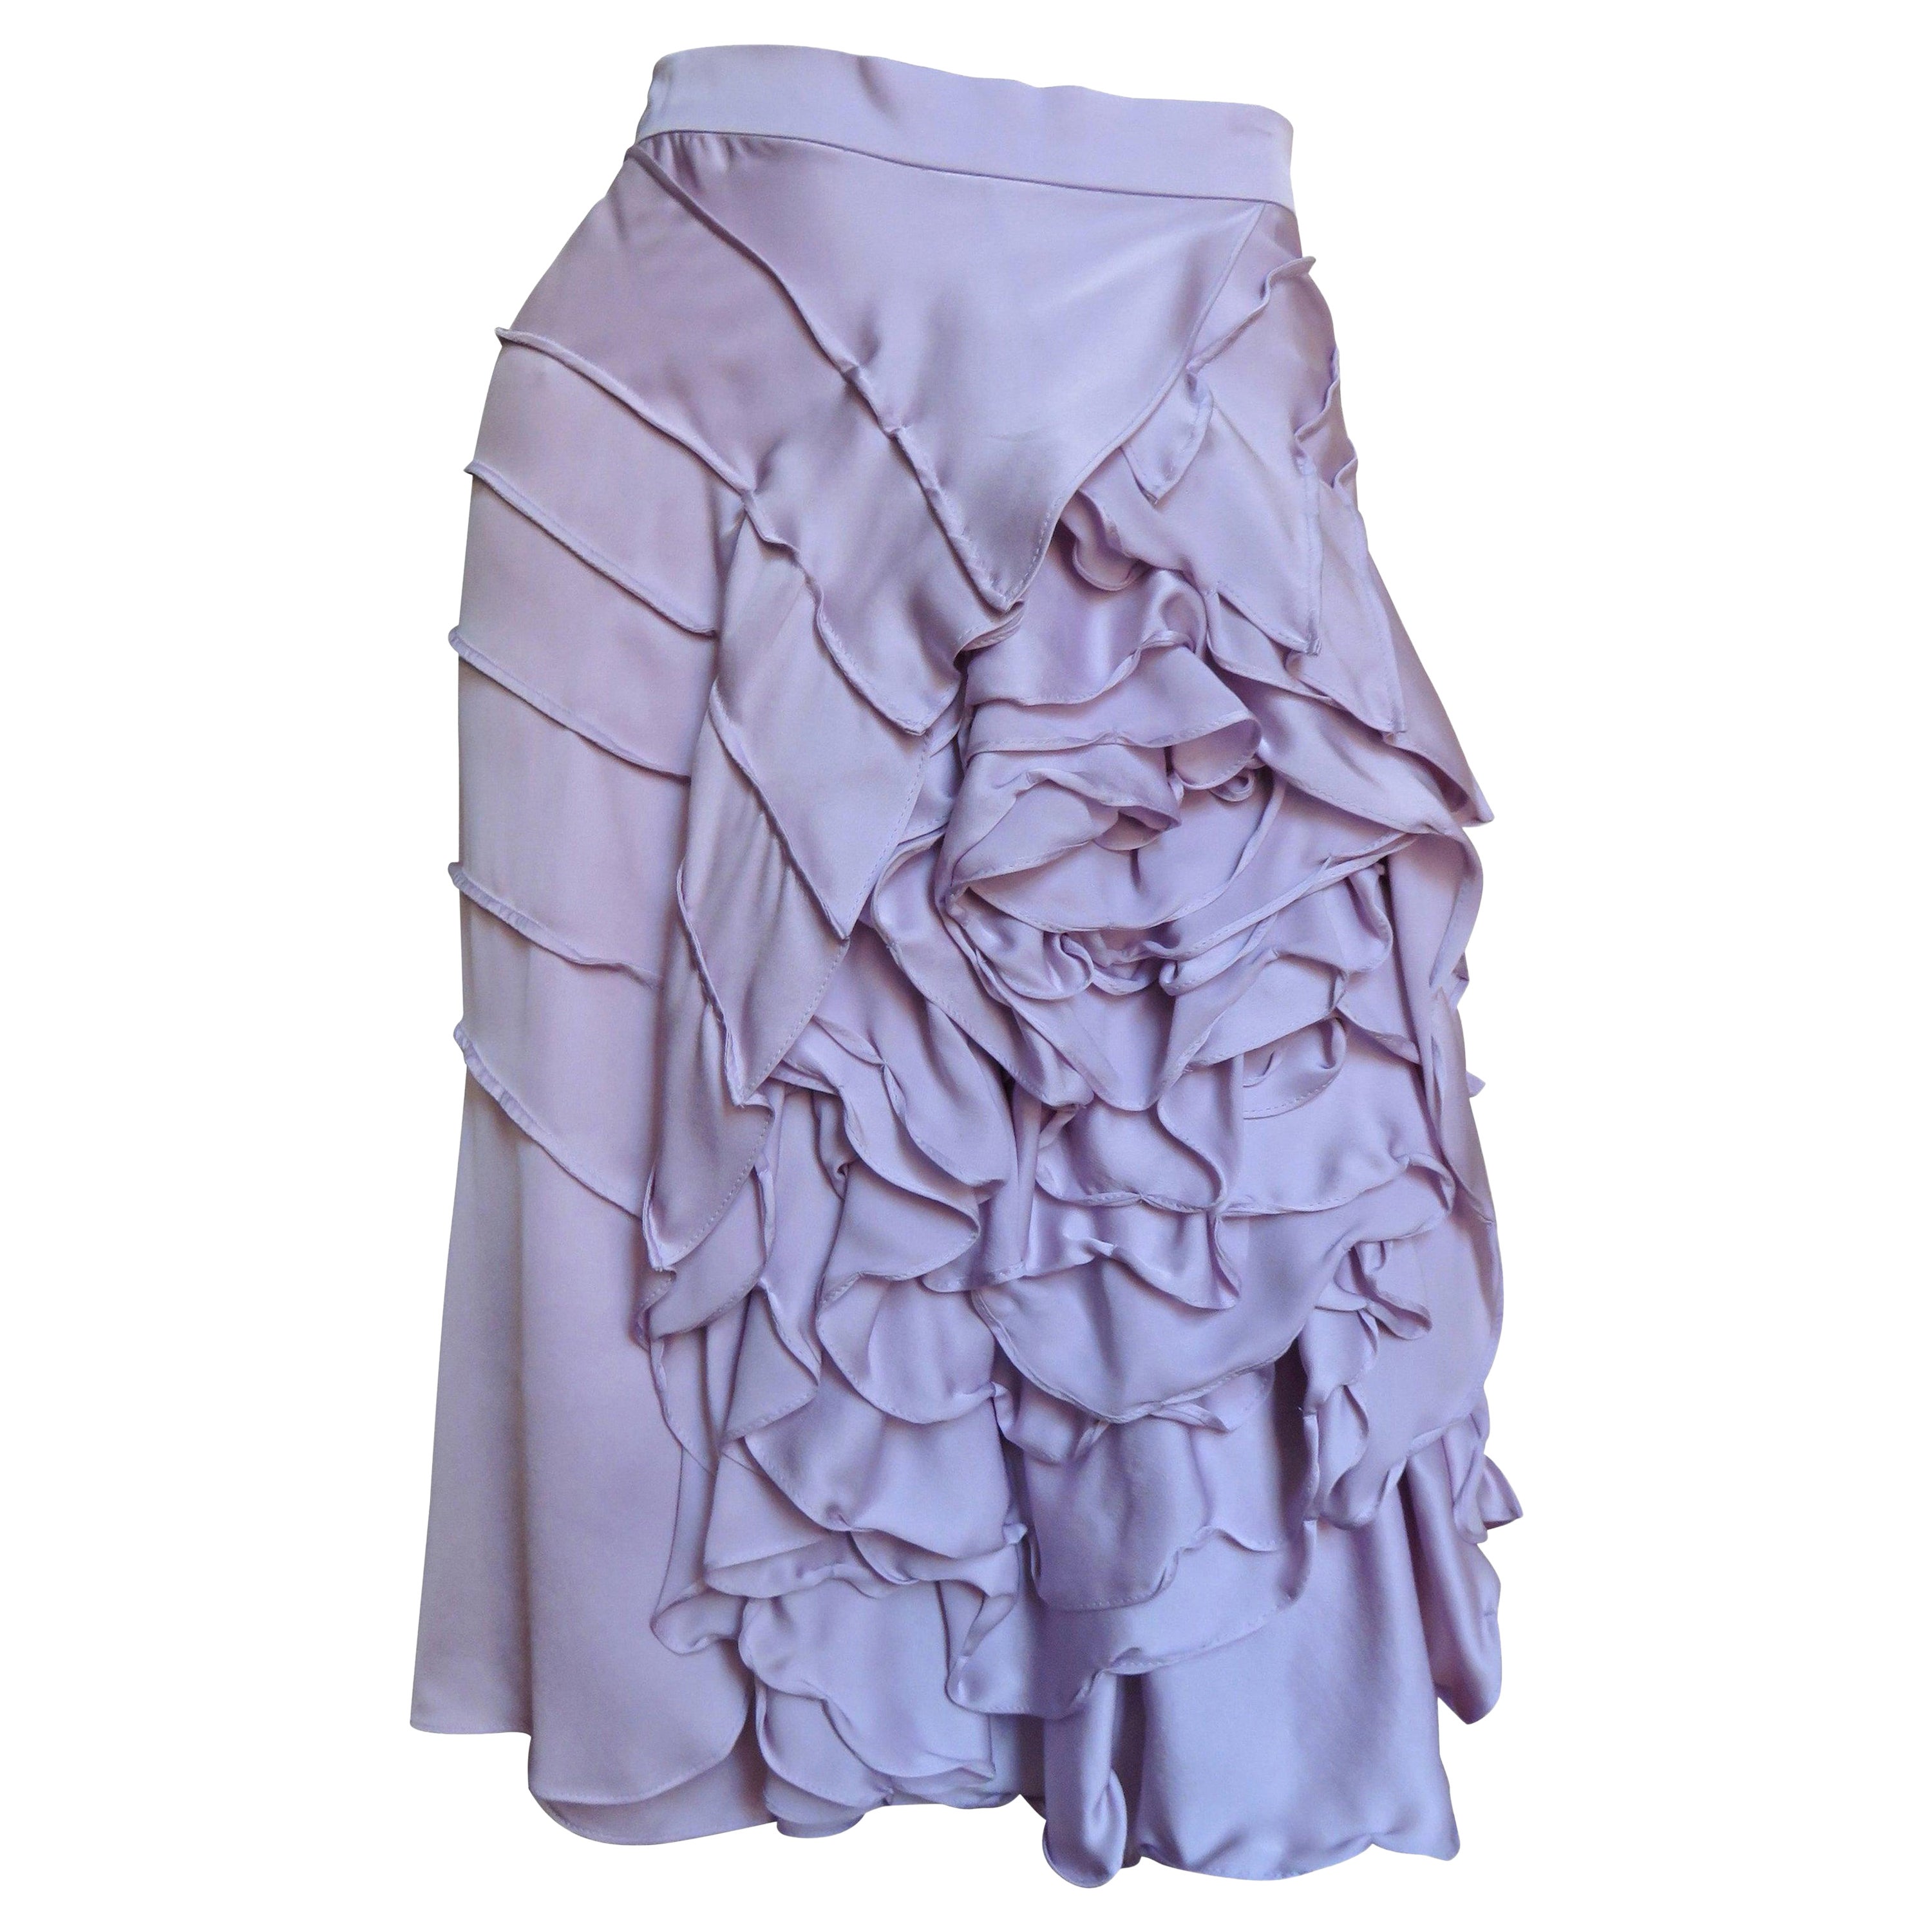  Tom Ford for Yves Saint Laurent YSL S/S 2003 Flower Skirt For Sale